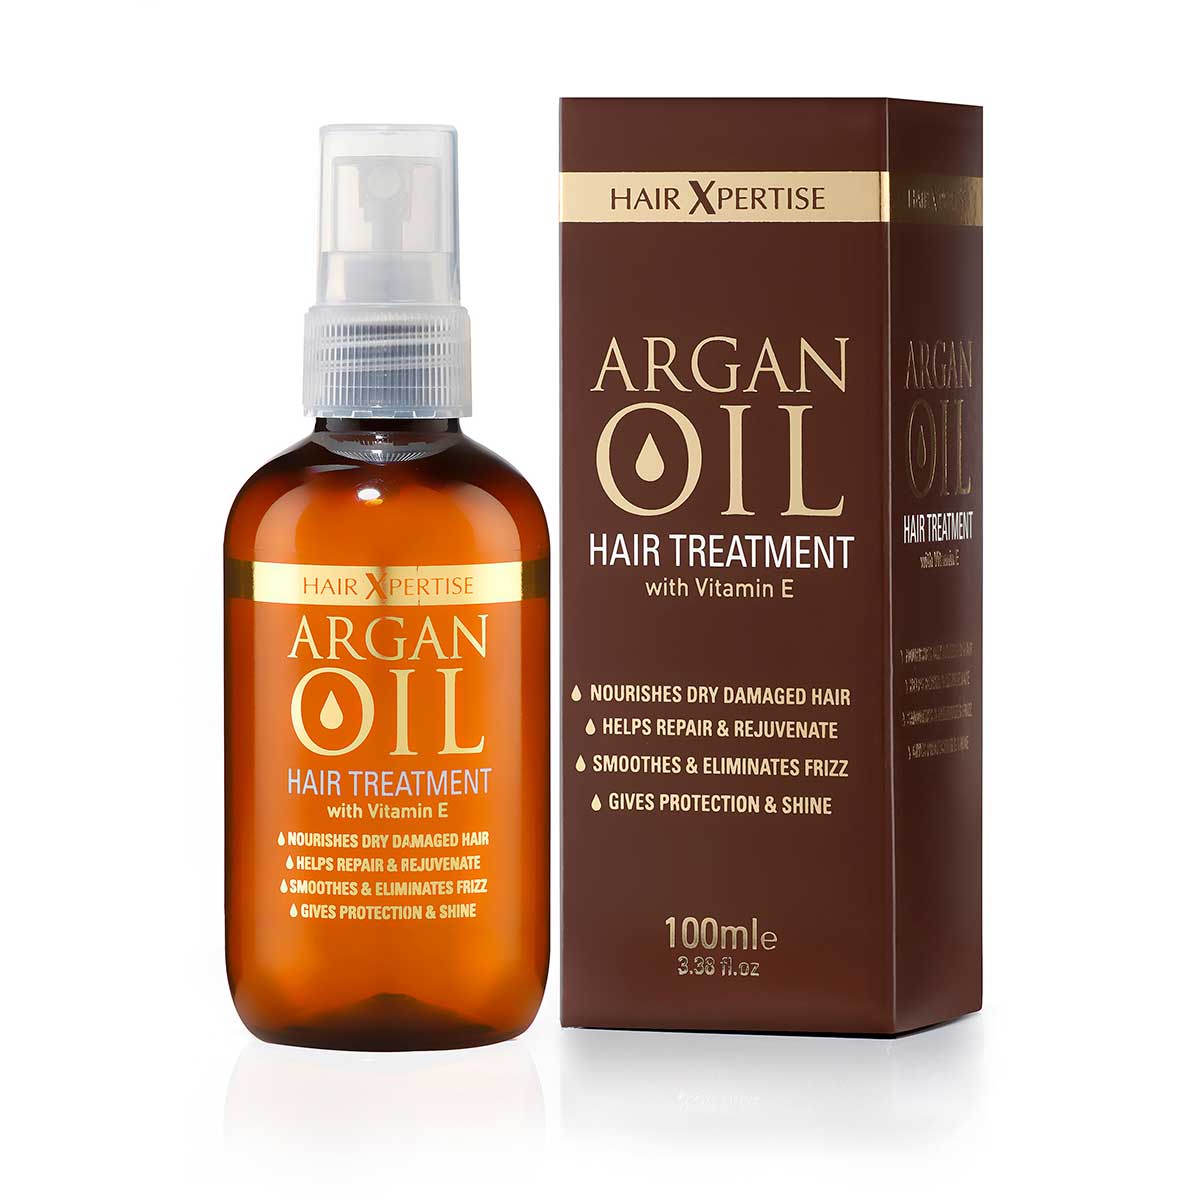 Argan Oil Treatment For Curly Hair - Curly Hair Style